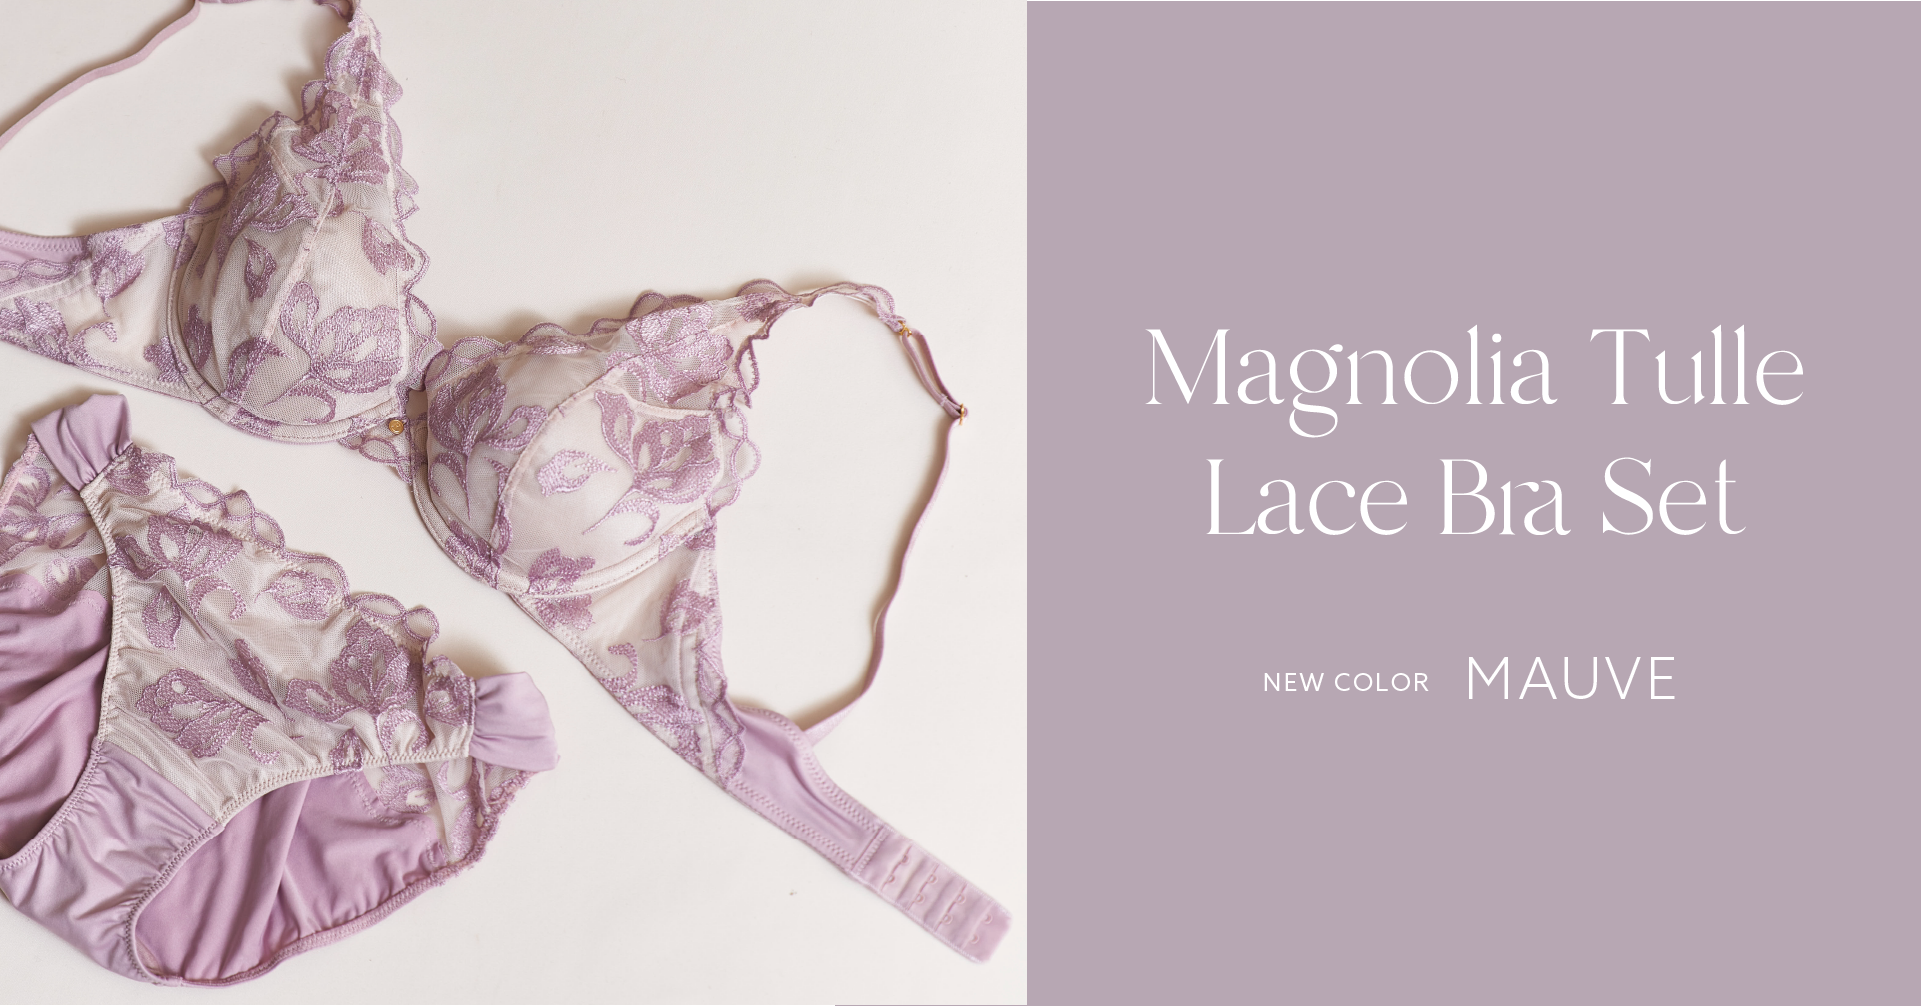 マグノリア柄のブラセットに新色”mauve”が登場。素肌を美しく魅せるシアーなカラー